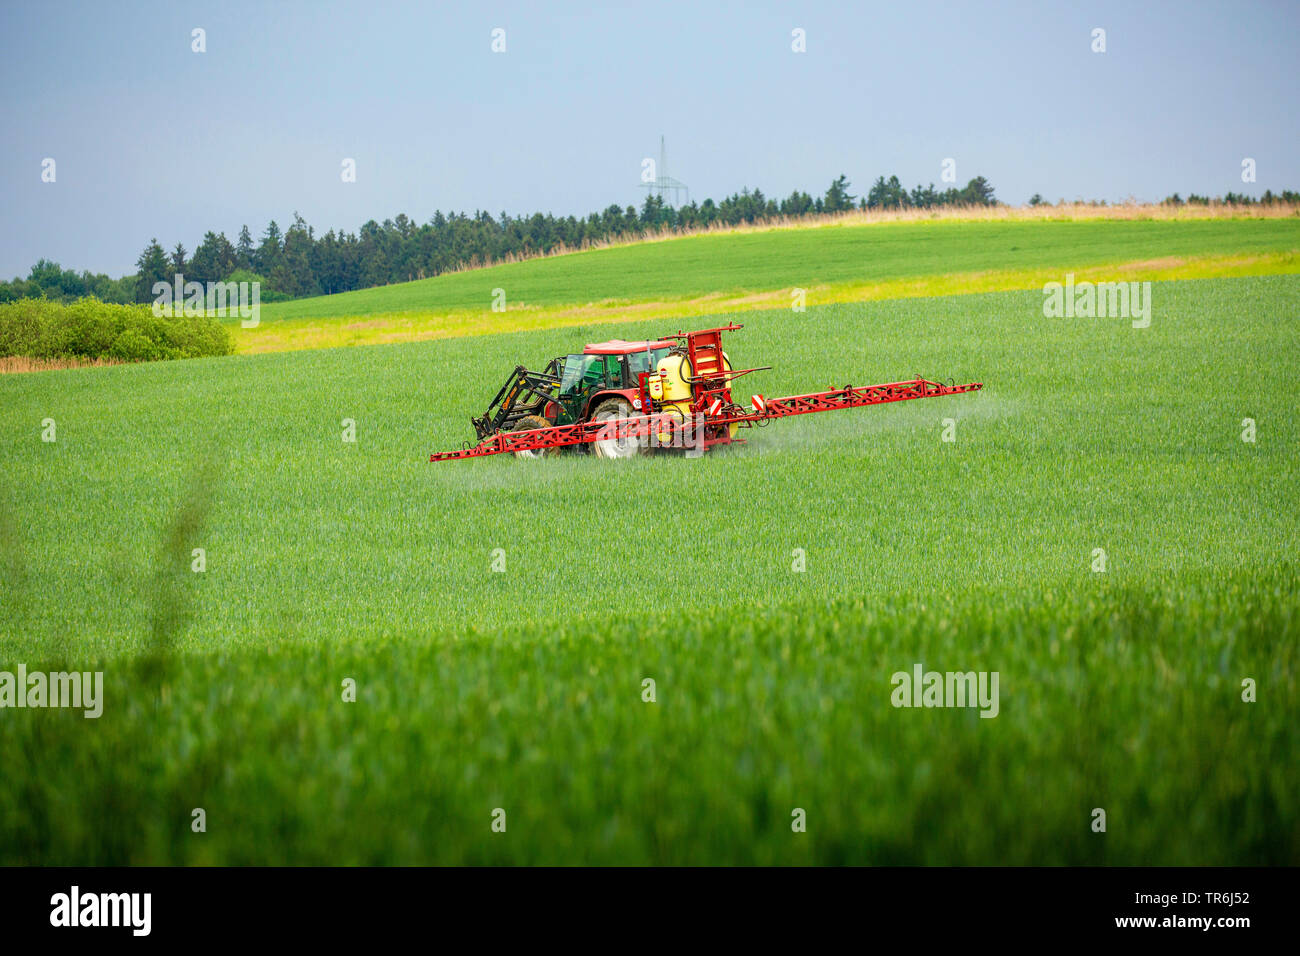 Le blé tendre, cultivé du blé (Triticum aestivum), l'application de pesticides sur le tracteur d'un champ de blé, l'Allemagne, la Bavière Banque D'Images